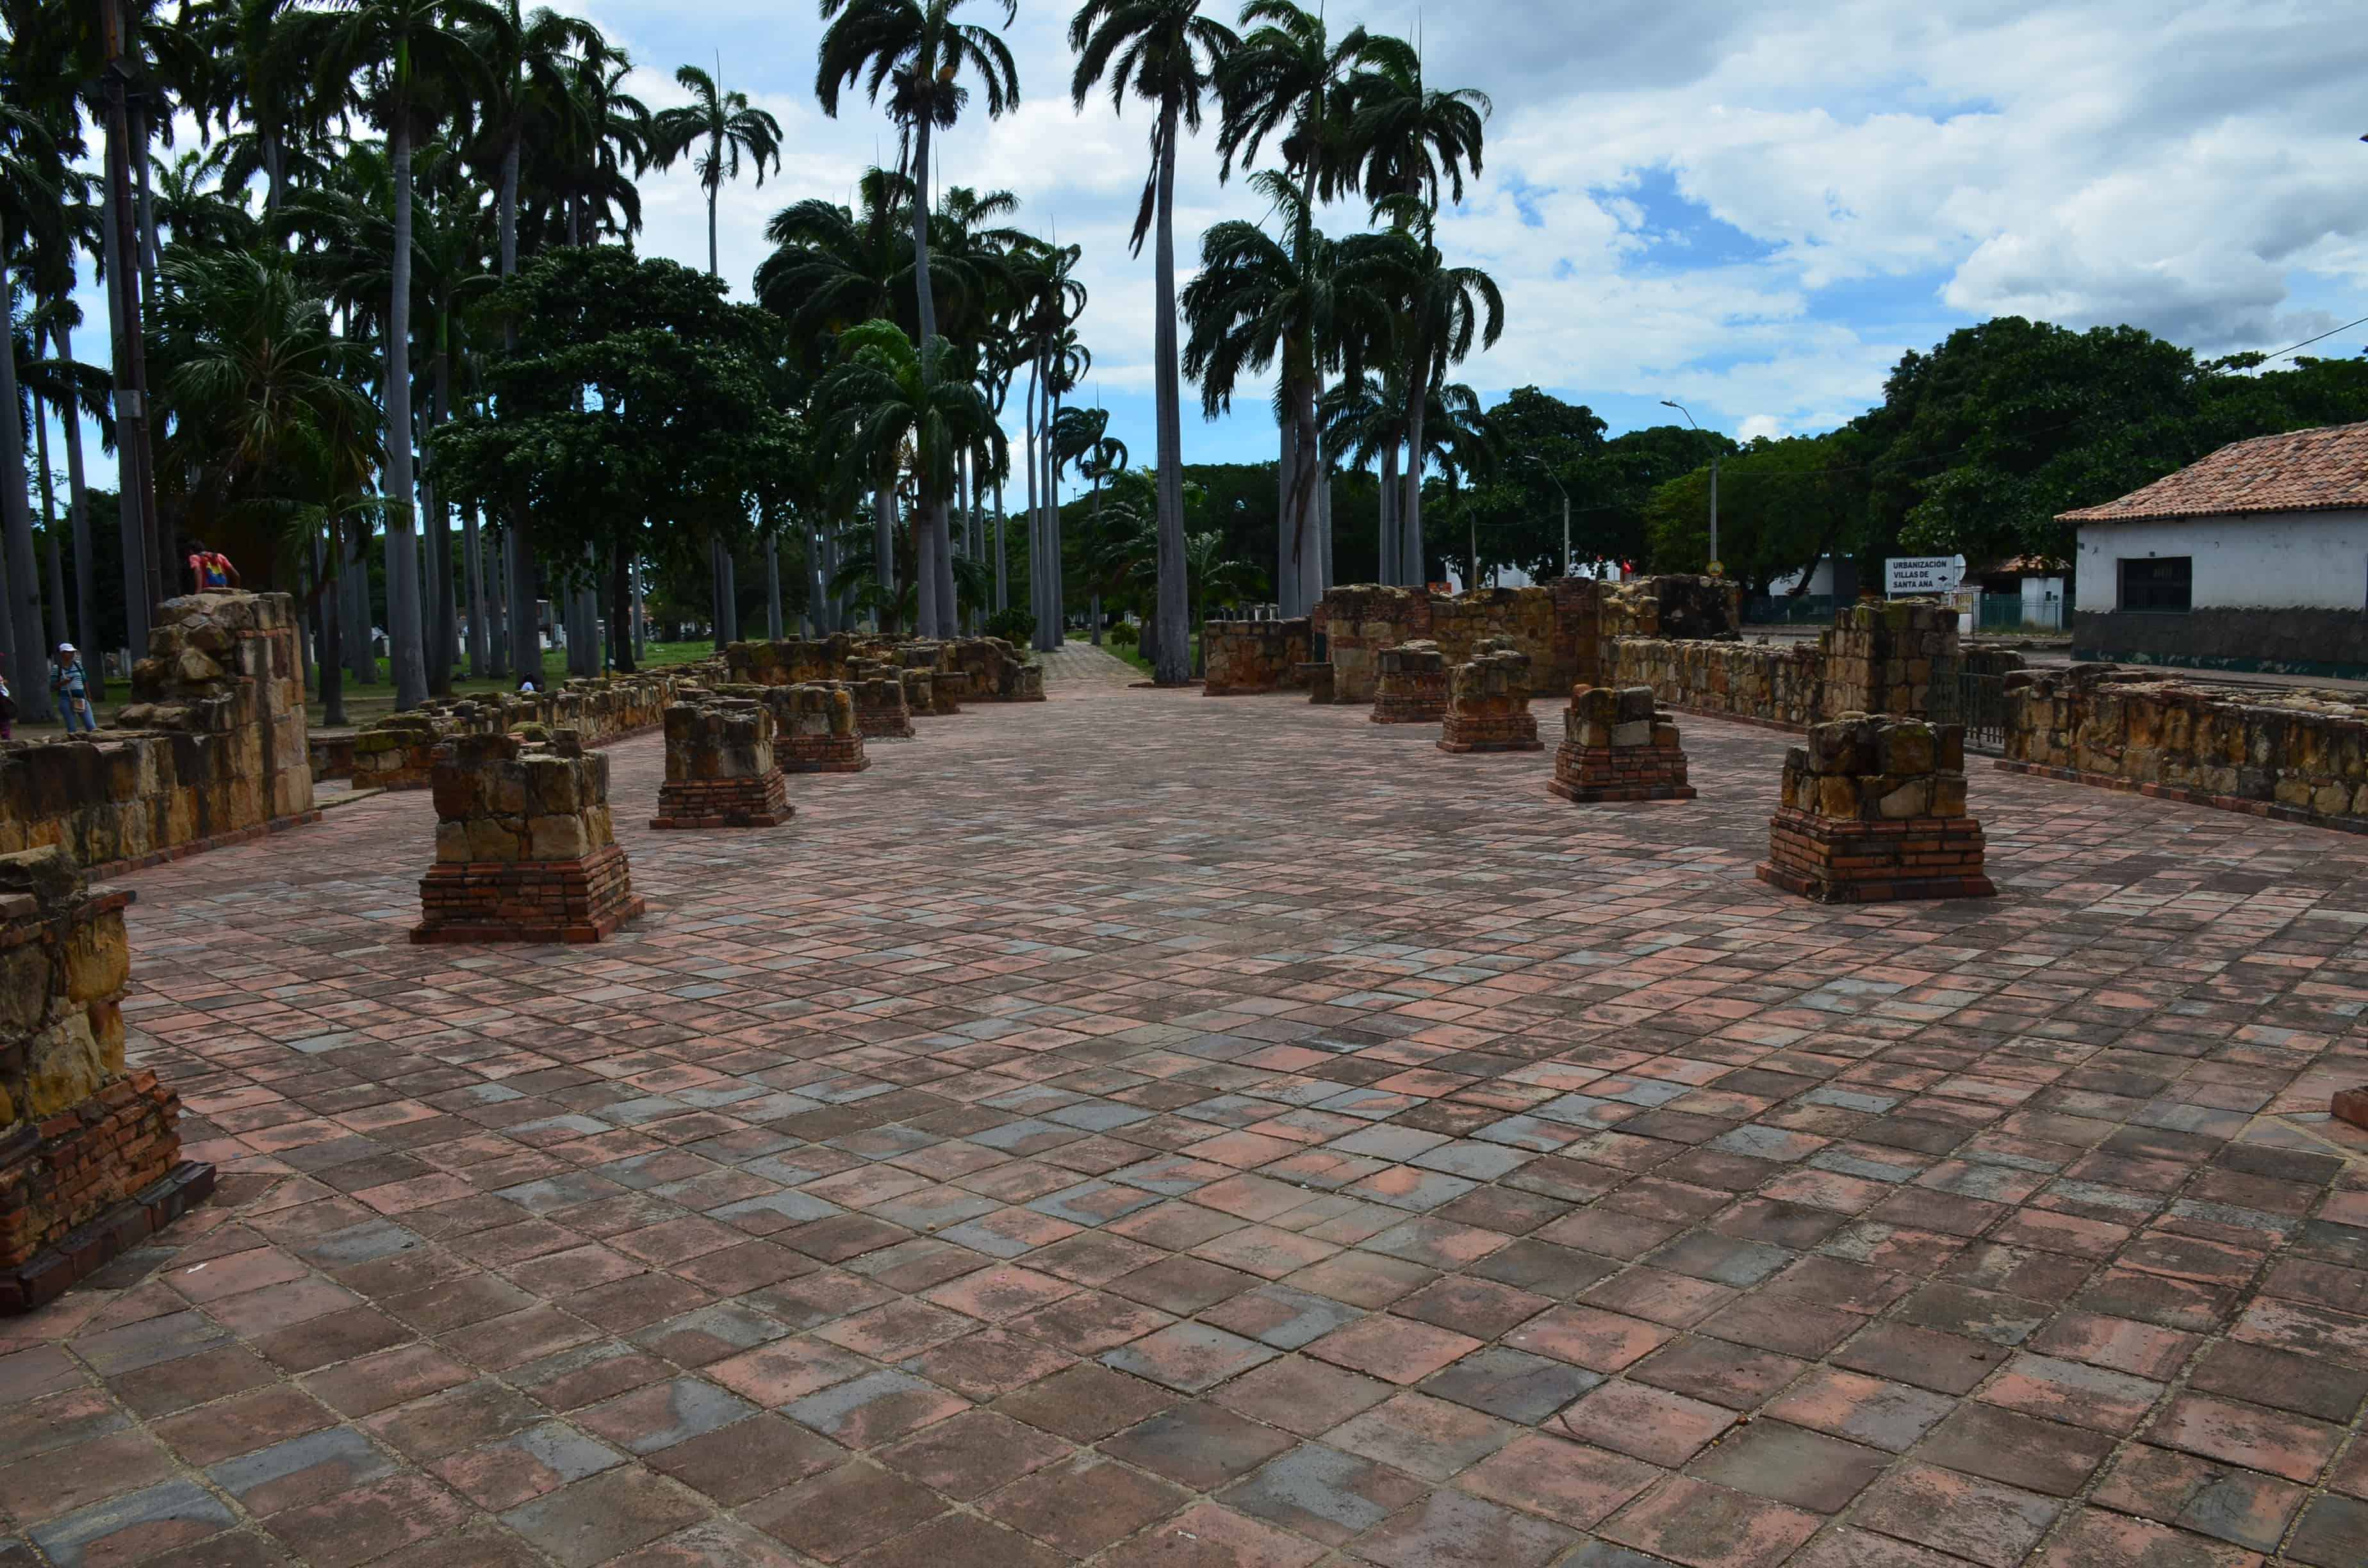 The former nave of the Historic Temple at Gran Colombia Park in Villa del Rosario, Norte de Santander, Colombia